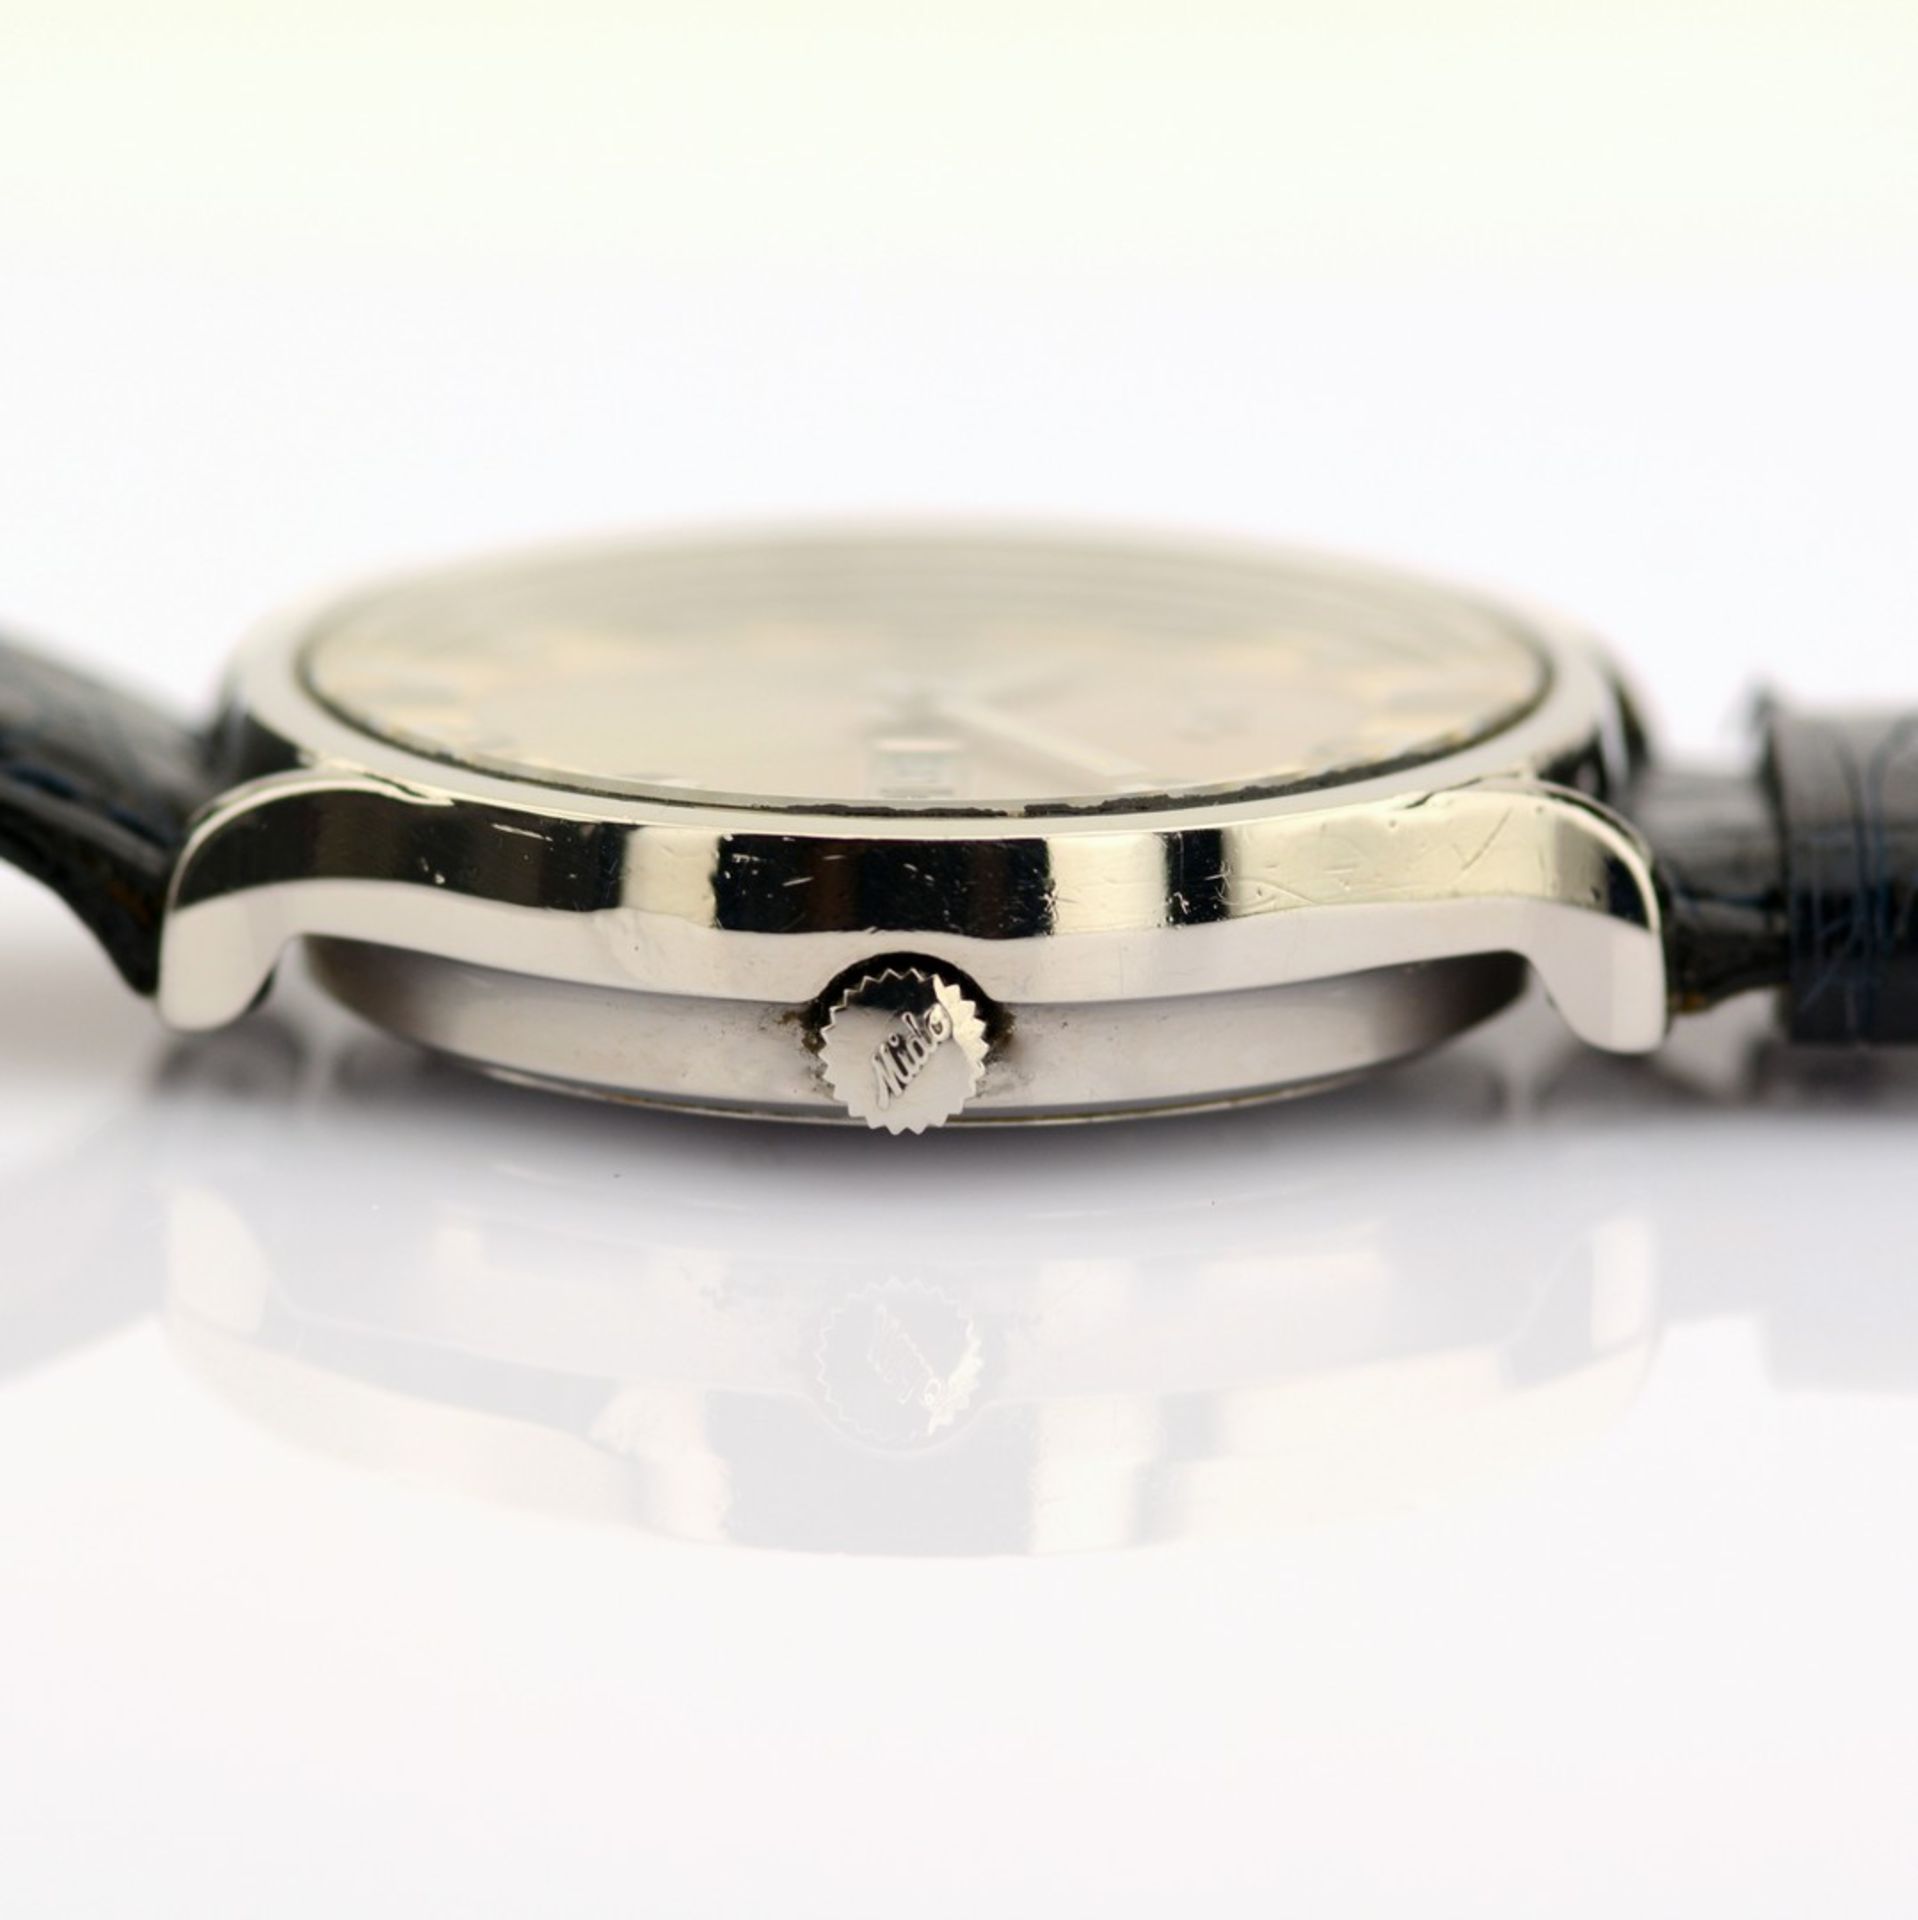 Mido / Ocean Star - Datoday - Day/Date - Gentlemen's Steel Wristwatch - Image 6 of 7